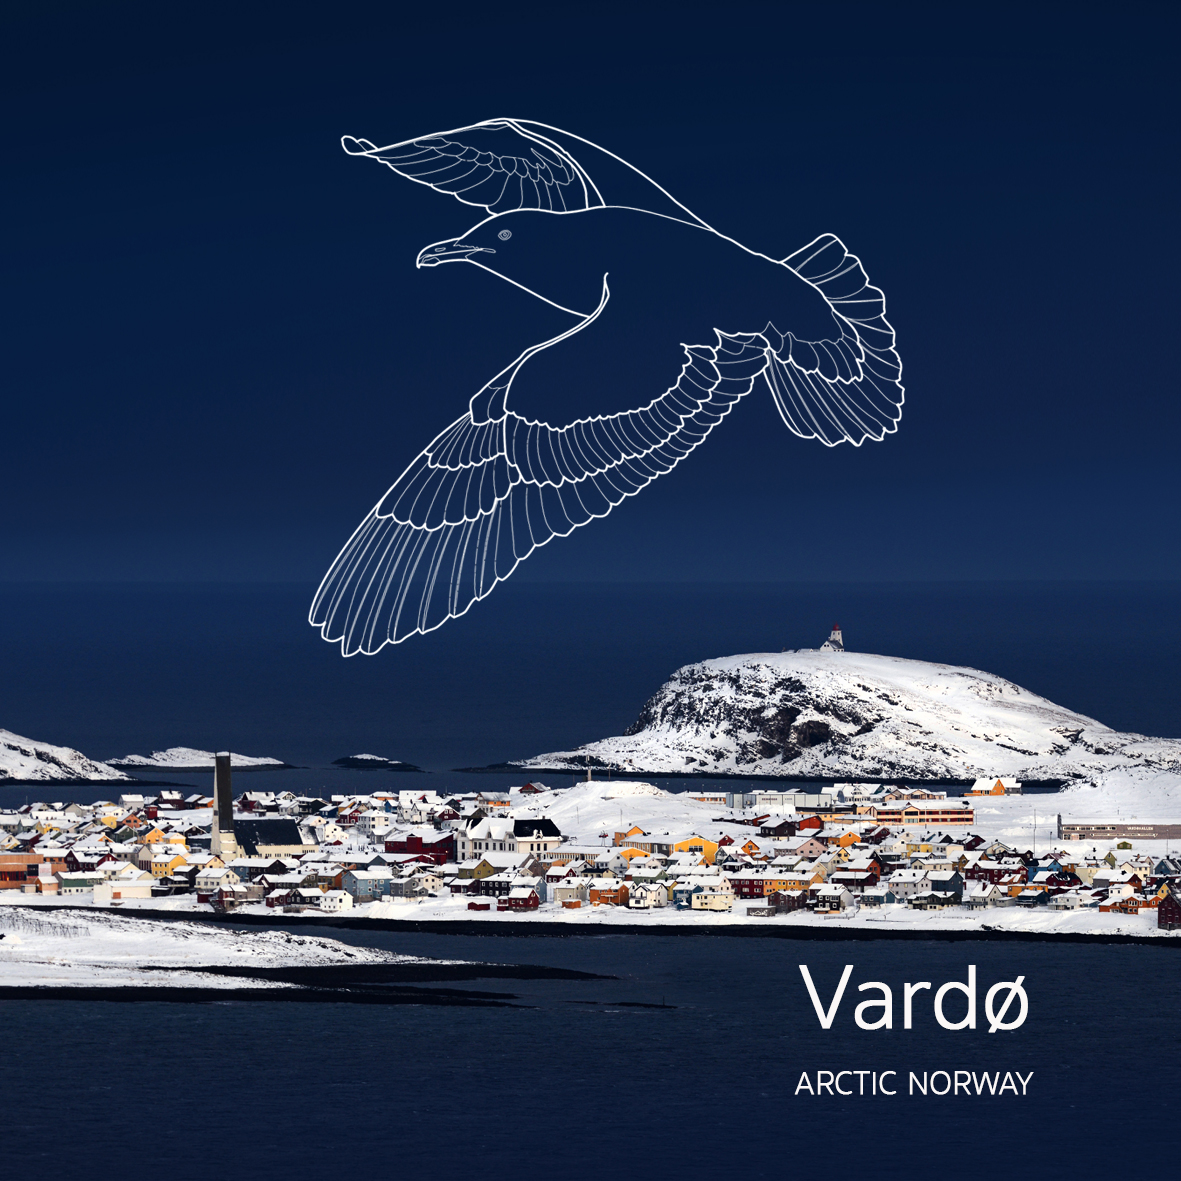 Den siste utposten på Varanger – Vardøhus festning i Vardø